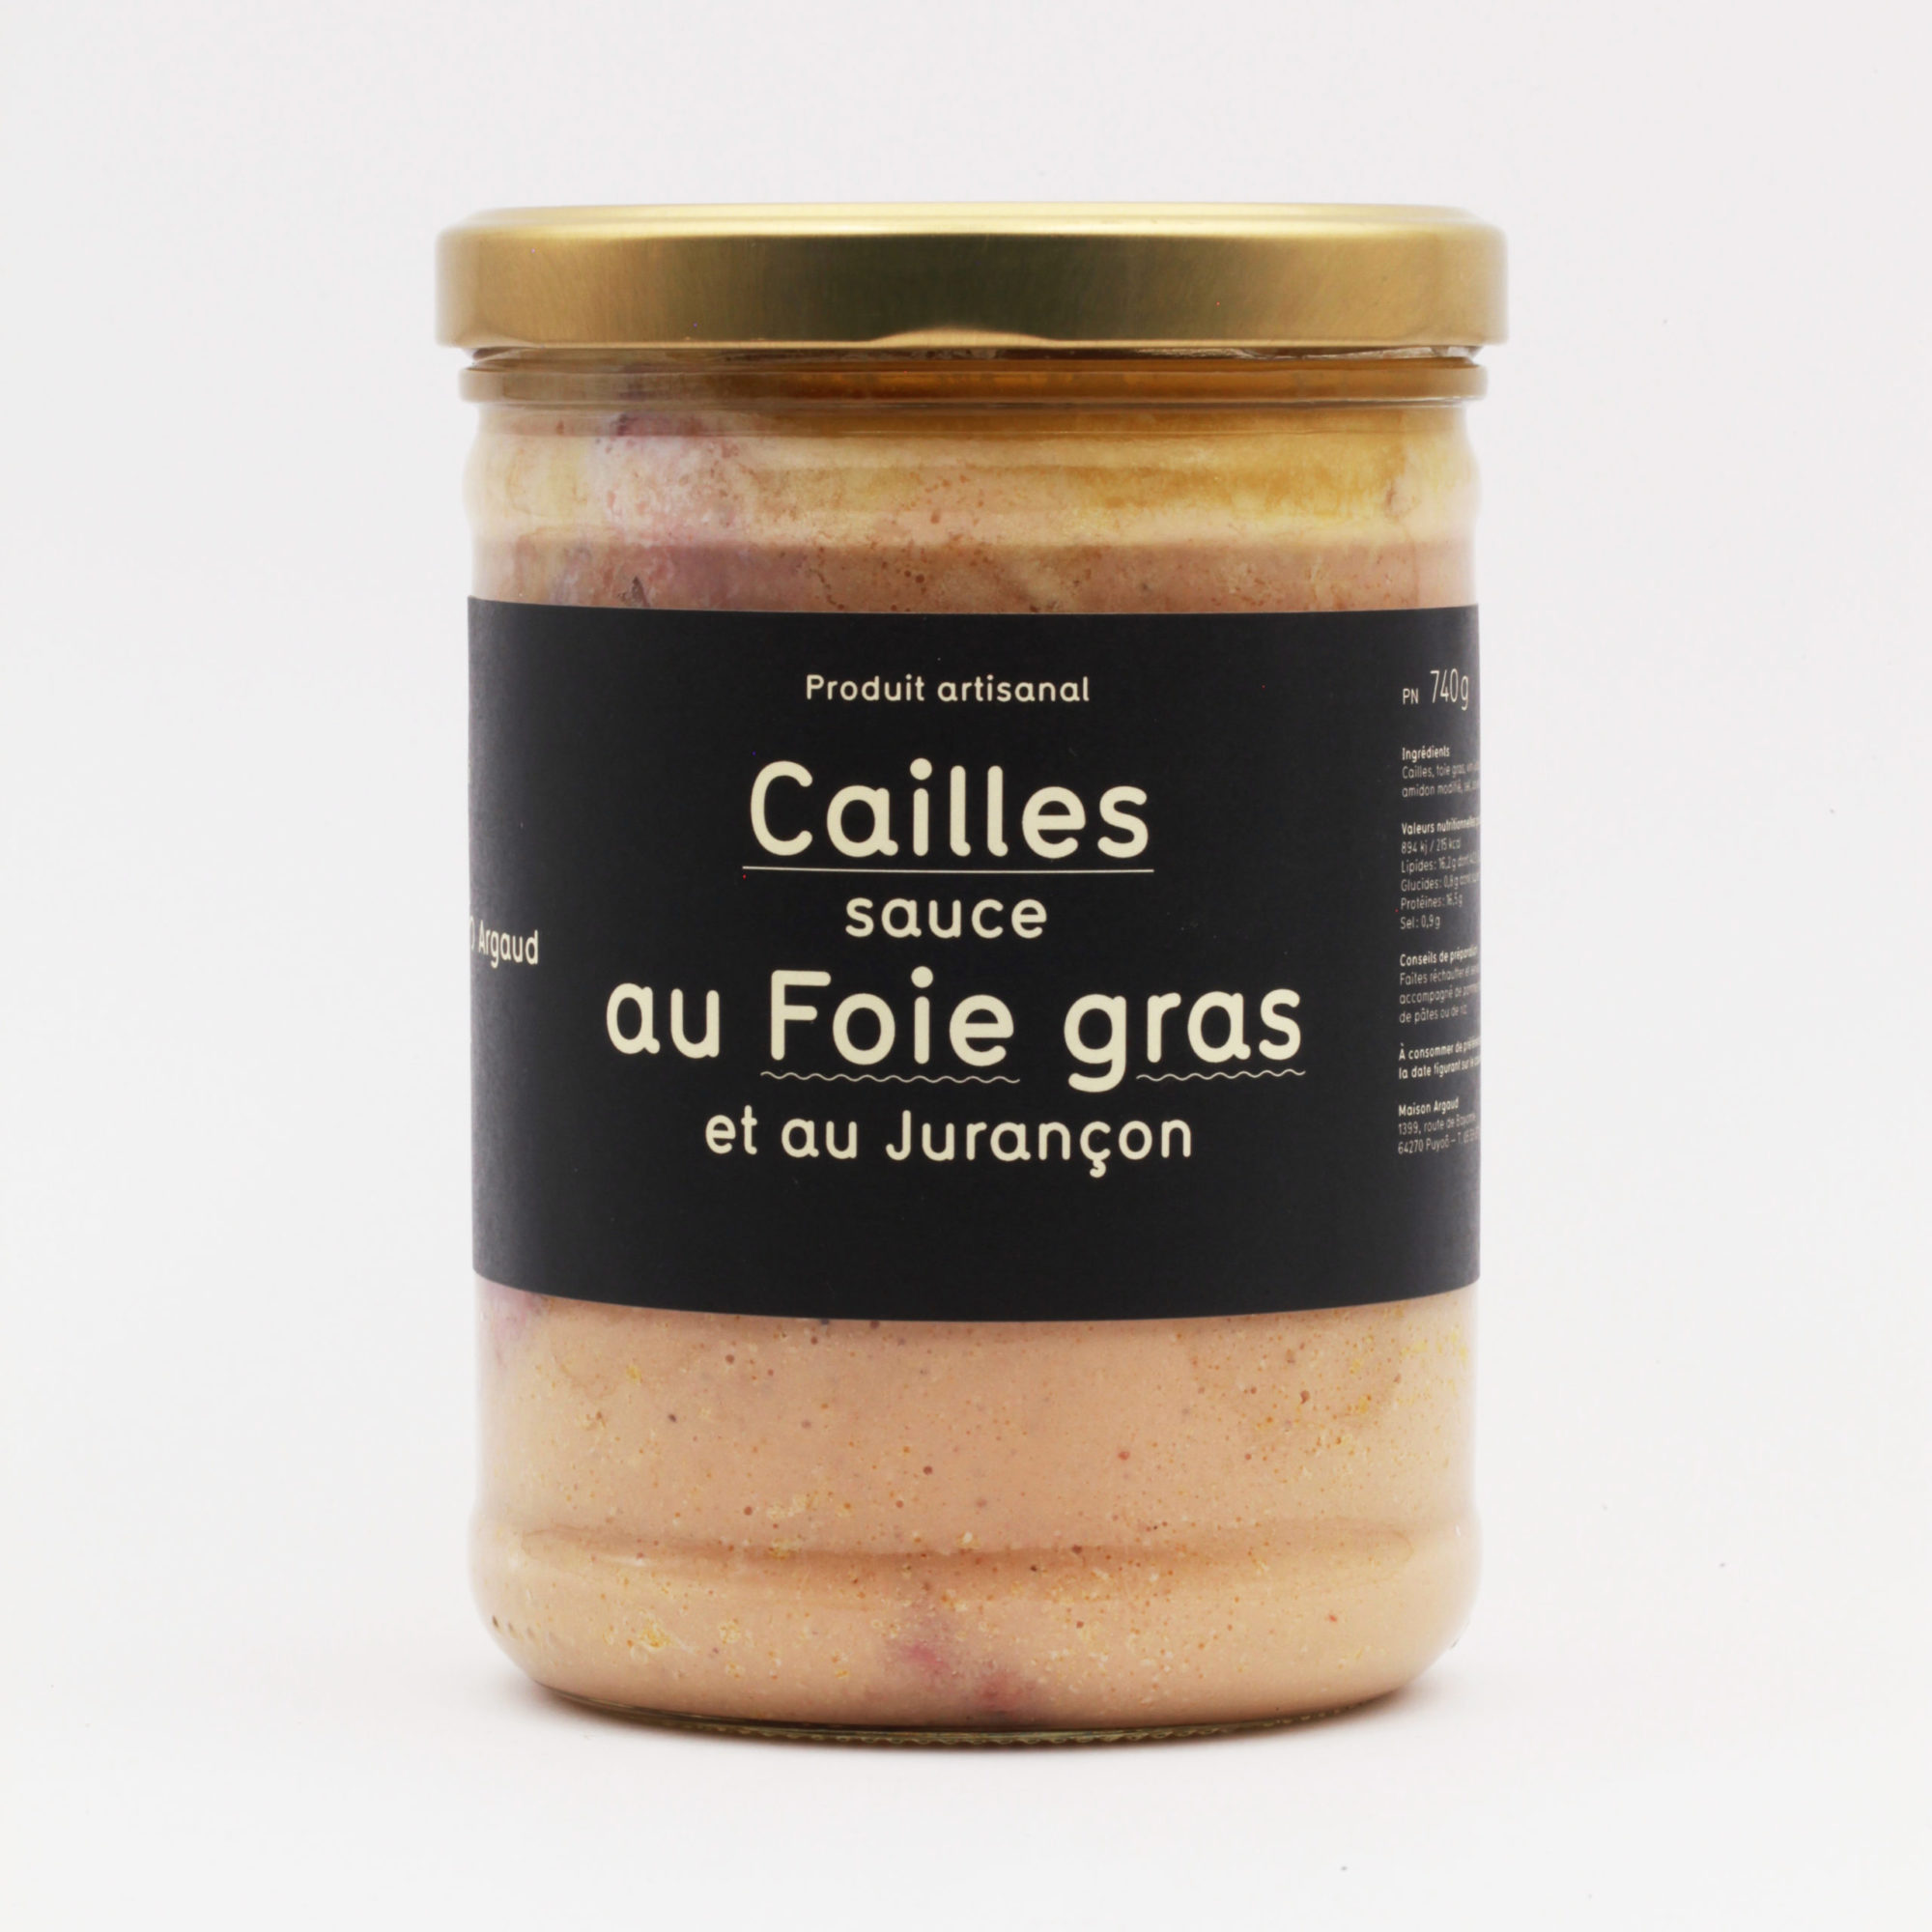 Cailles sauce au foie gras